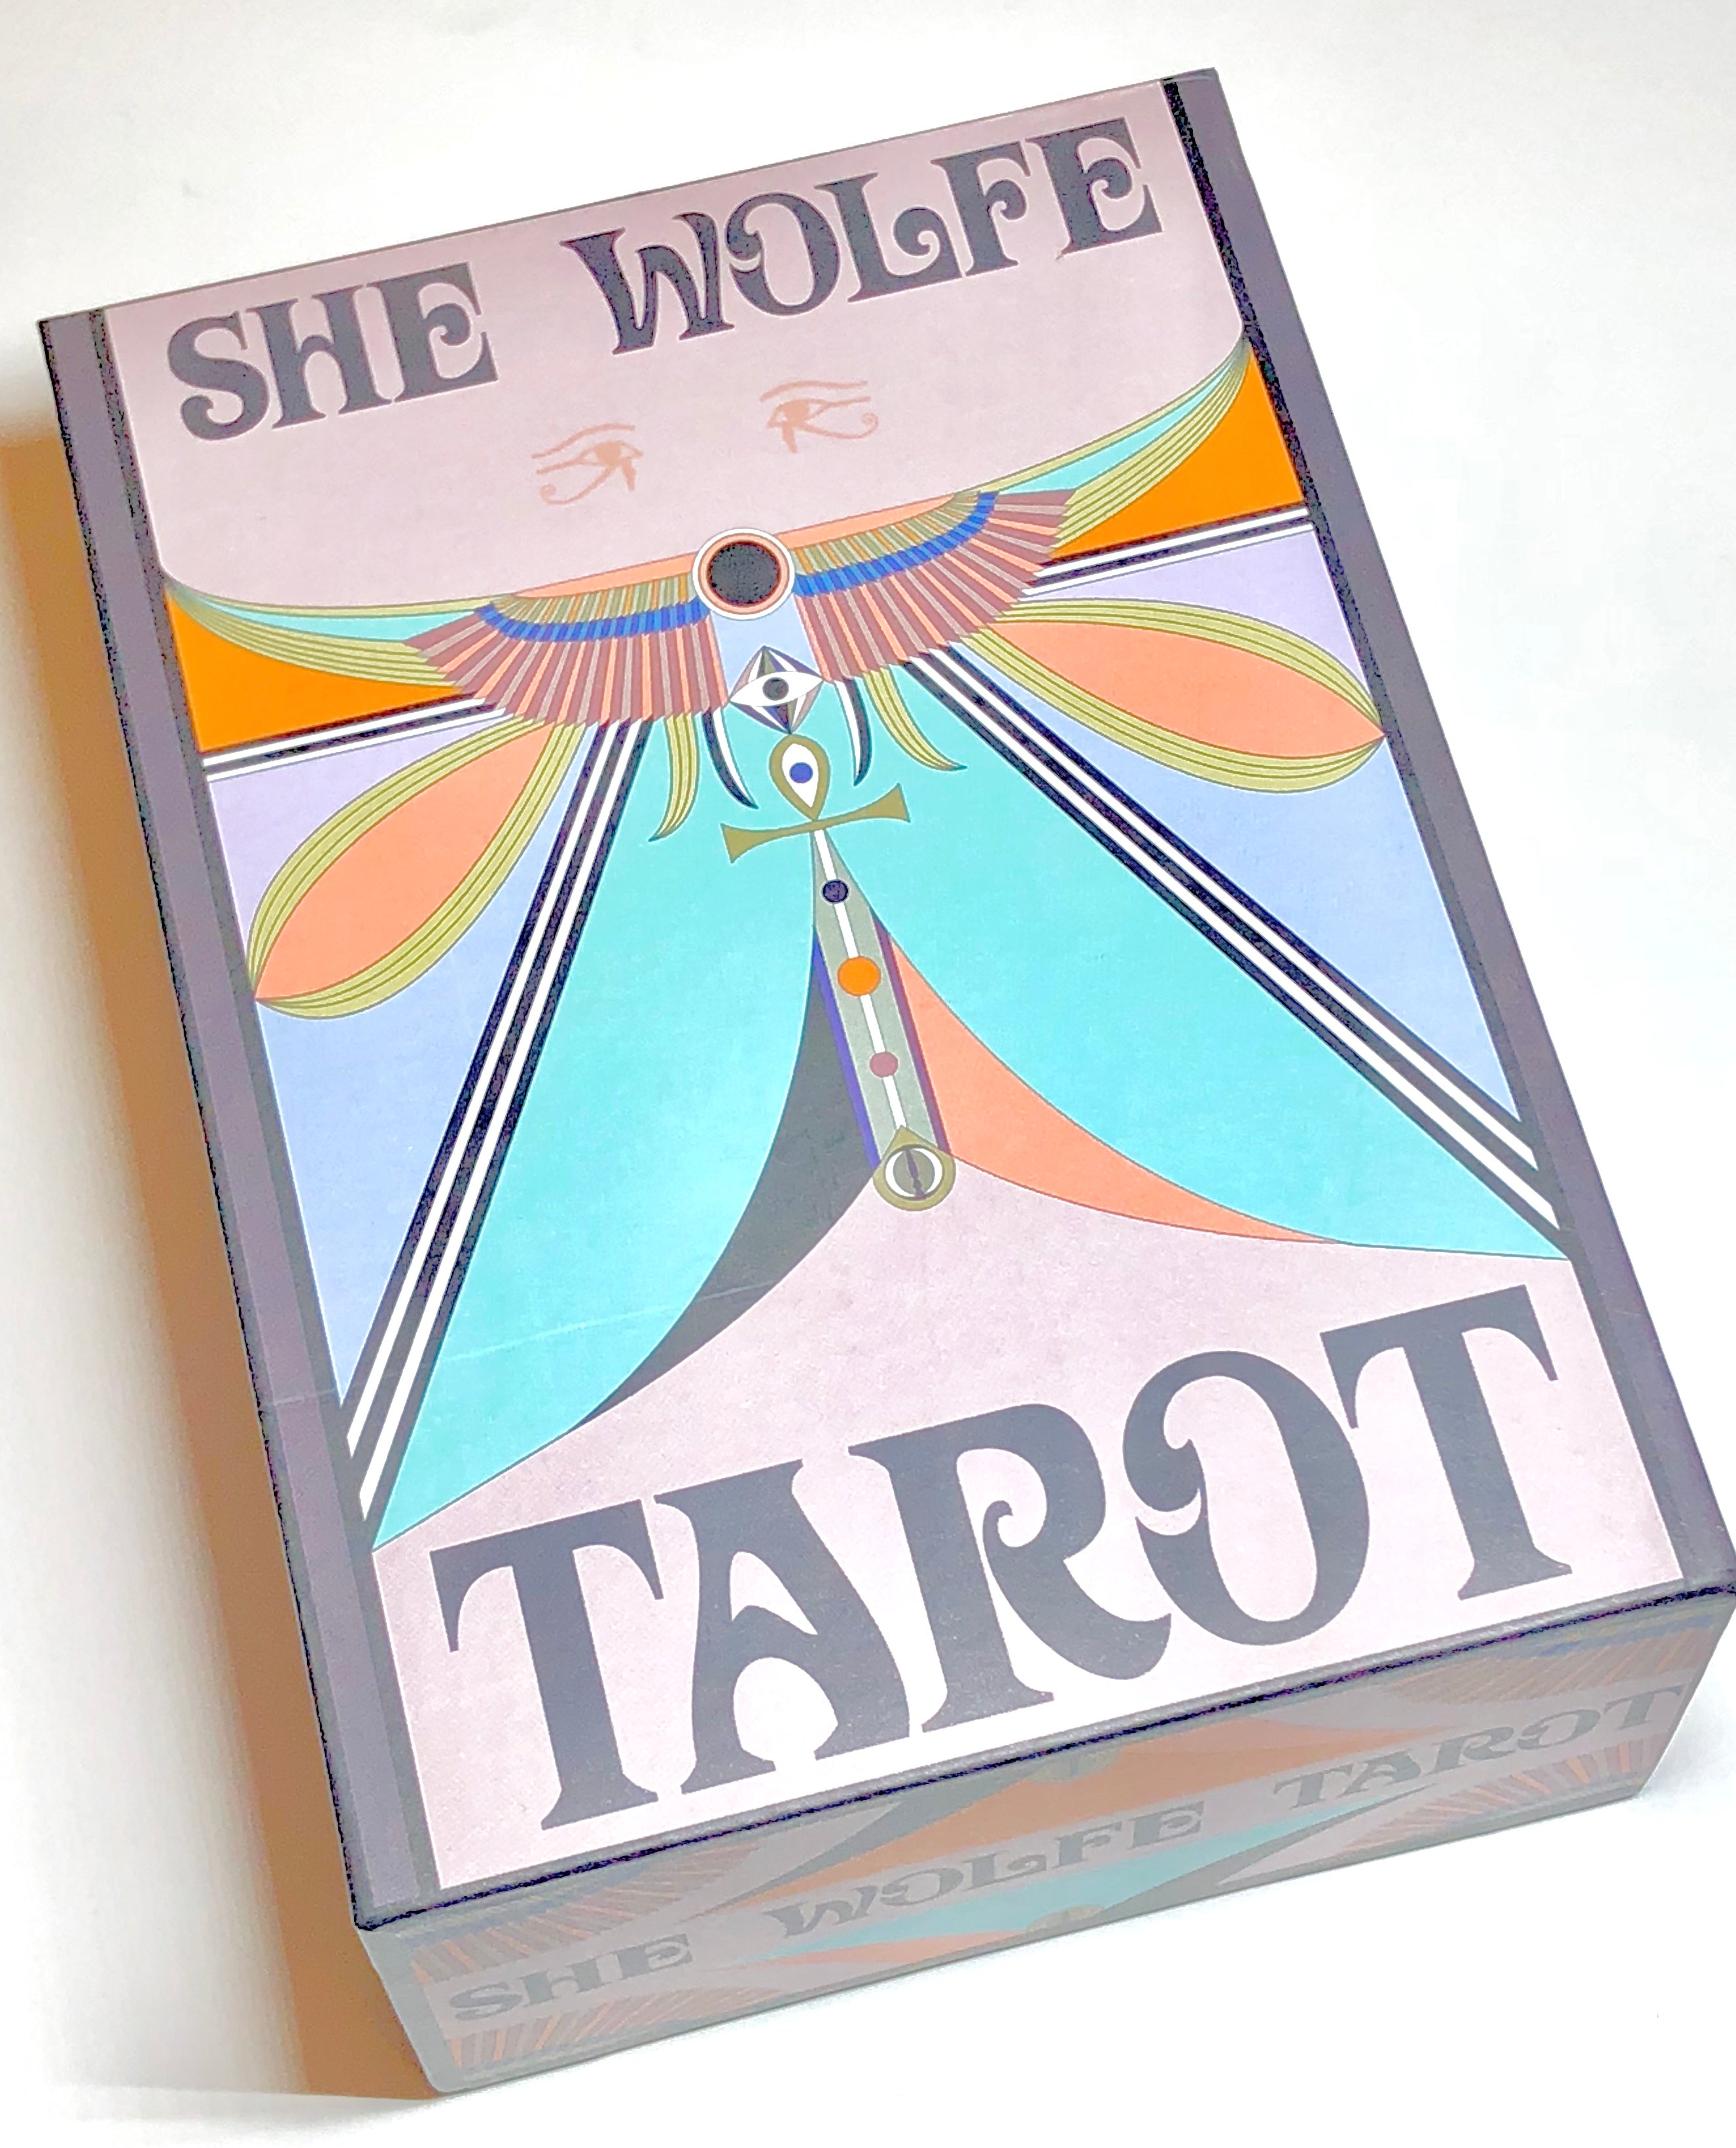 She Wolf Tarot Deck